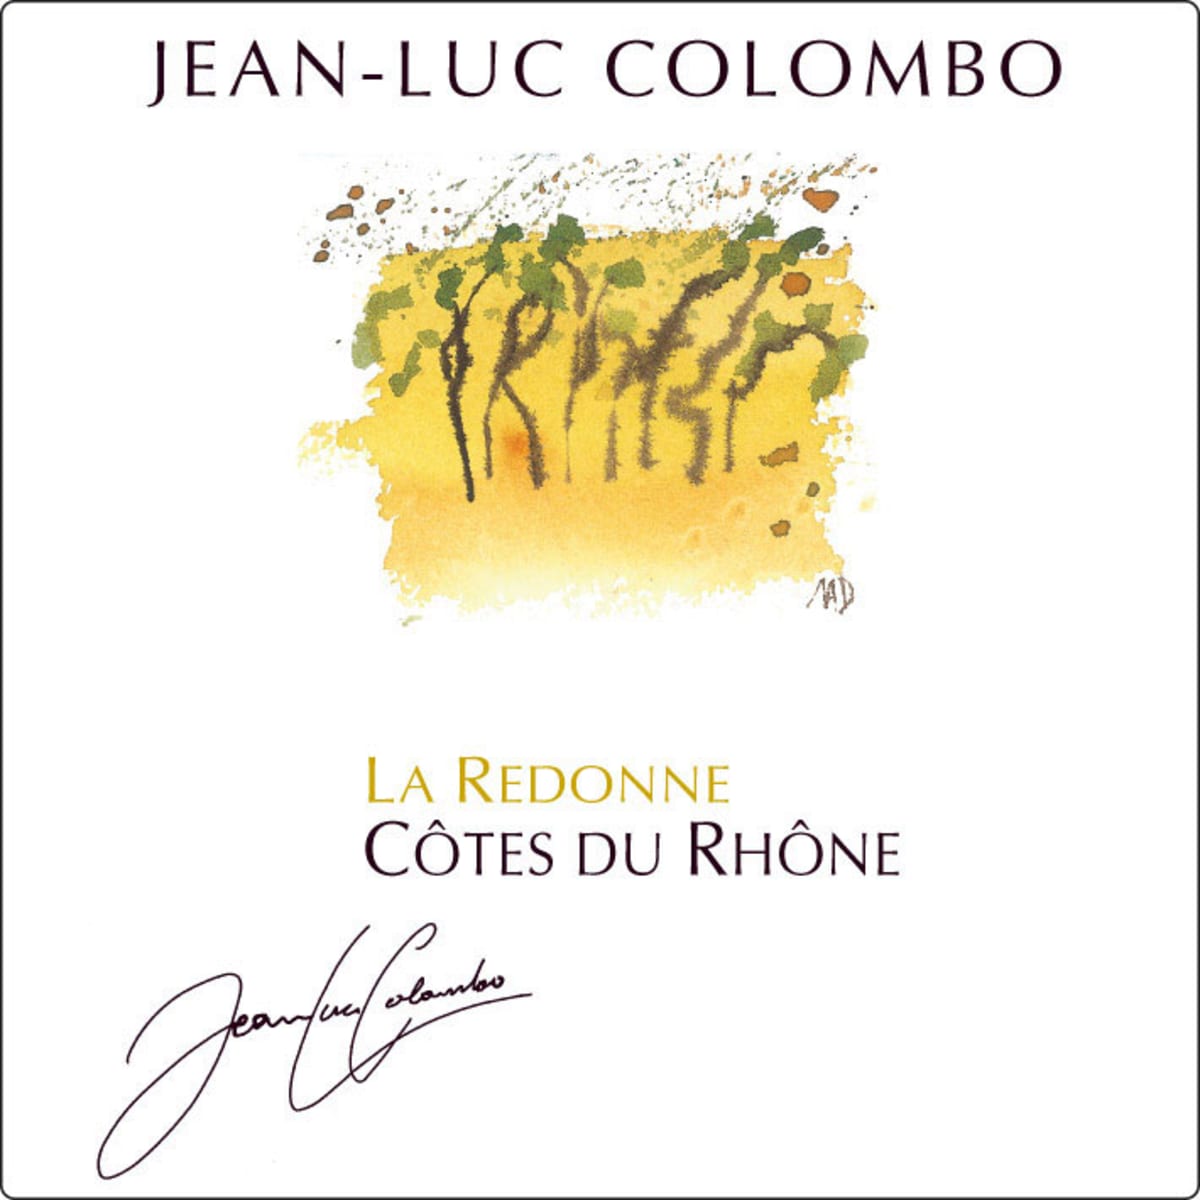 Jean-Luc Colombo Cotes du Rhone La Redonne Blanc 2009 Front Label